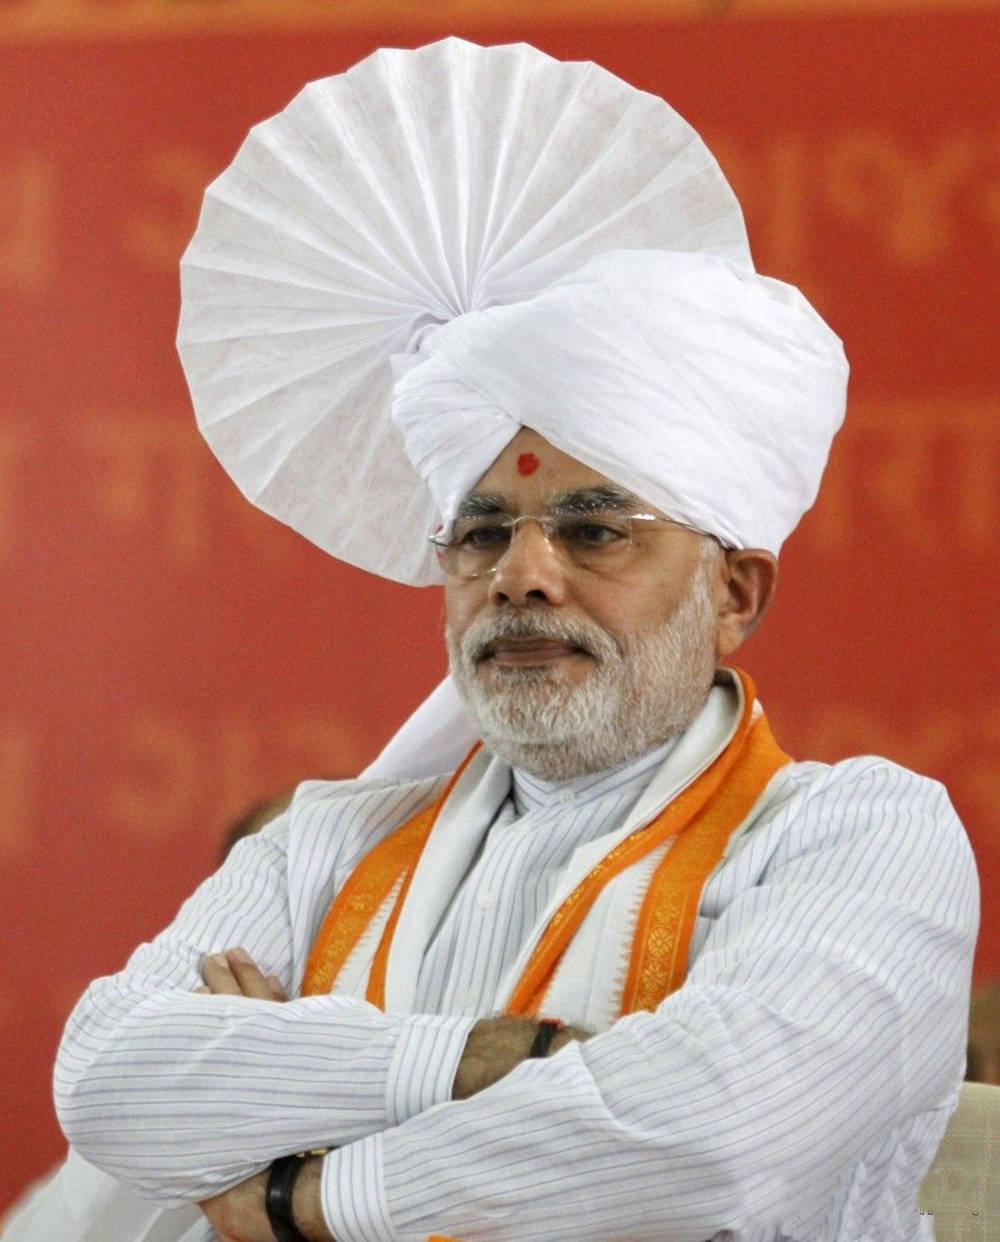 Indian Prime Minister Narendra Modi In White Turban